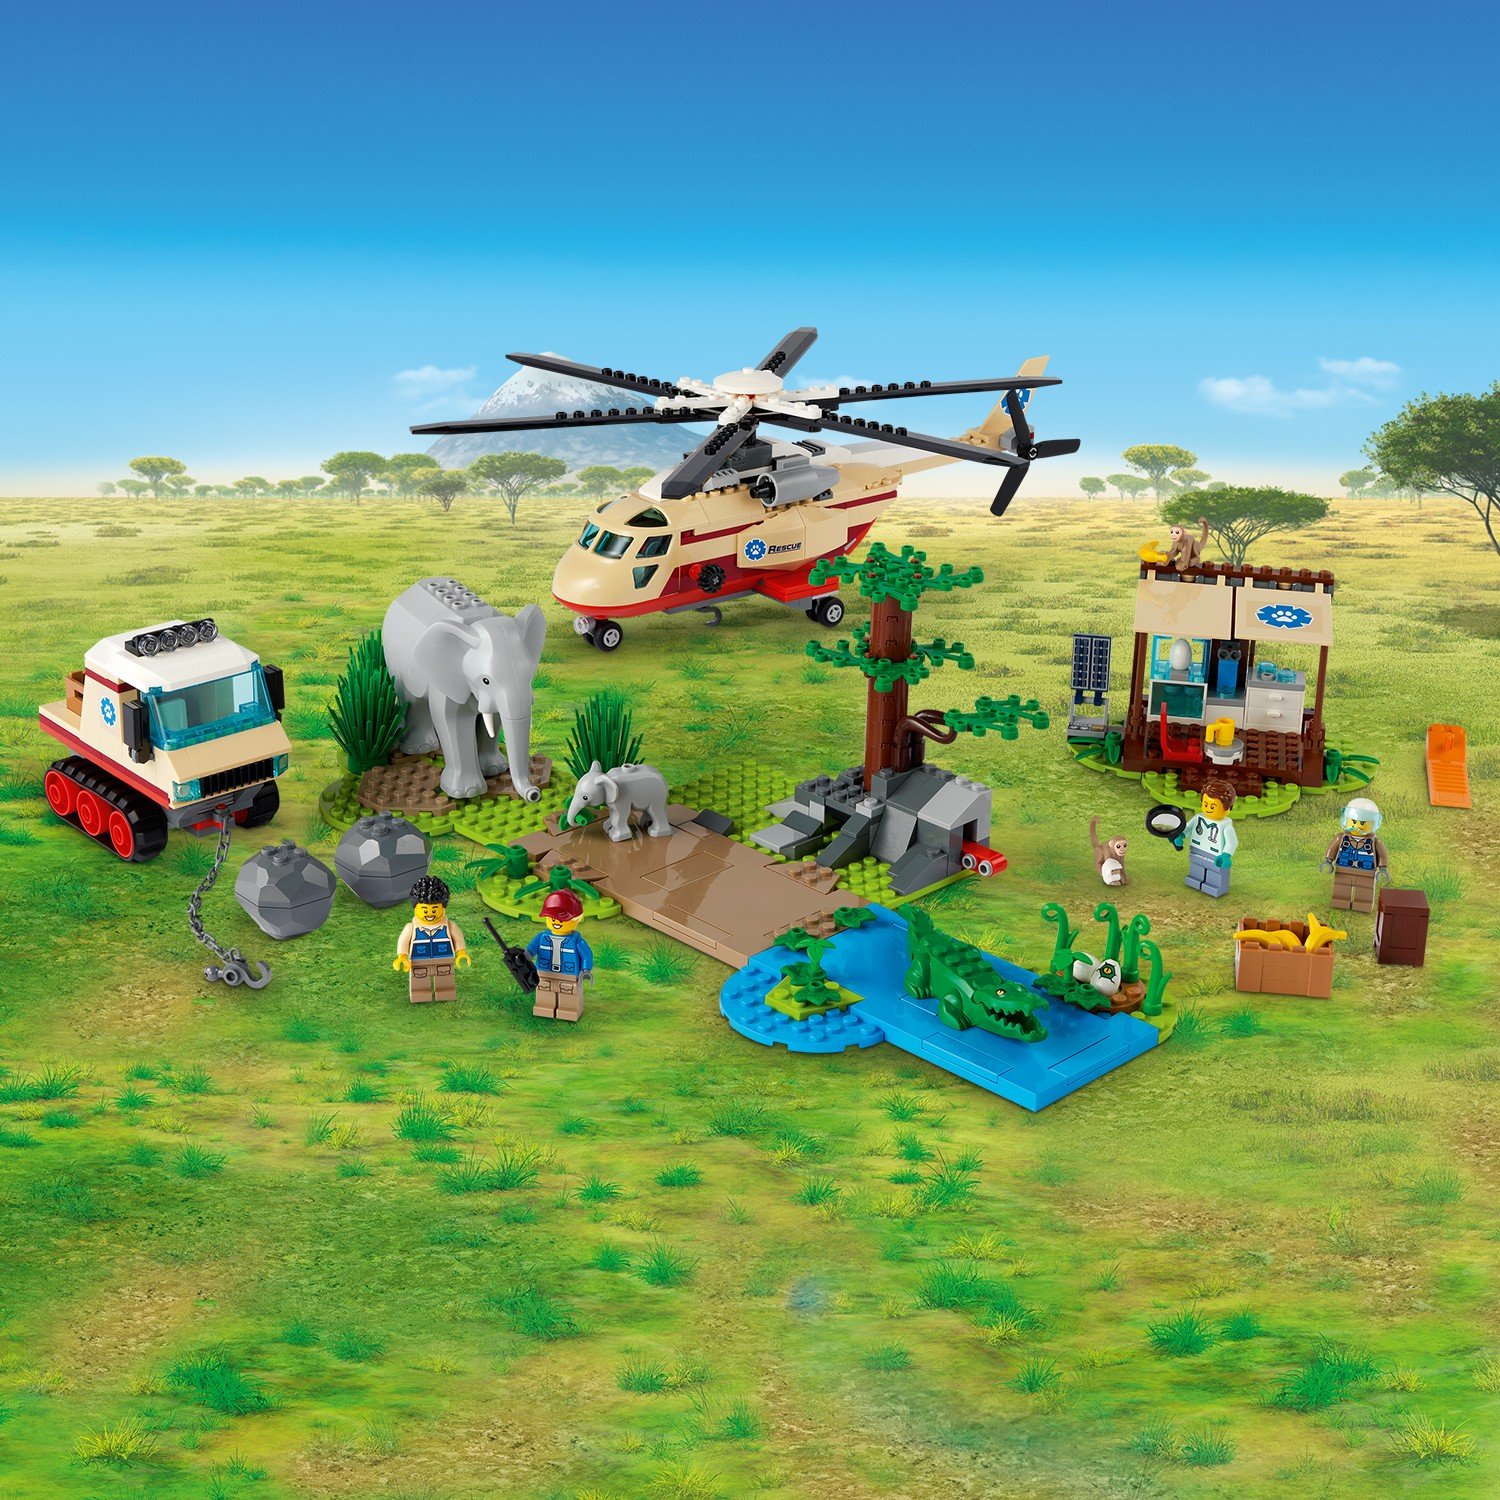 Конструктор LEGO City 60302 Операция по спасению зверей